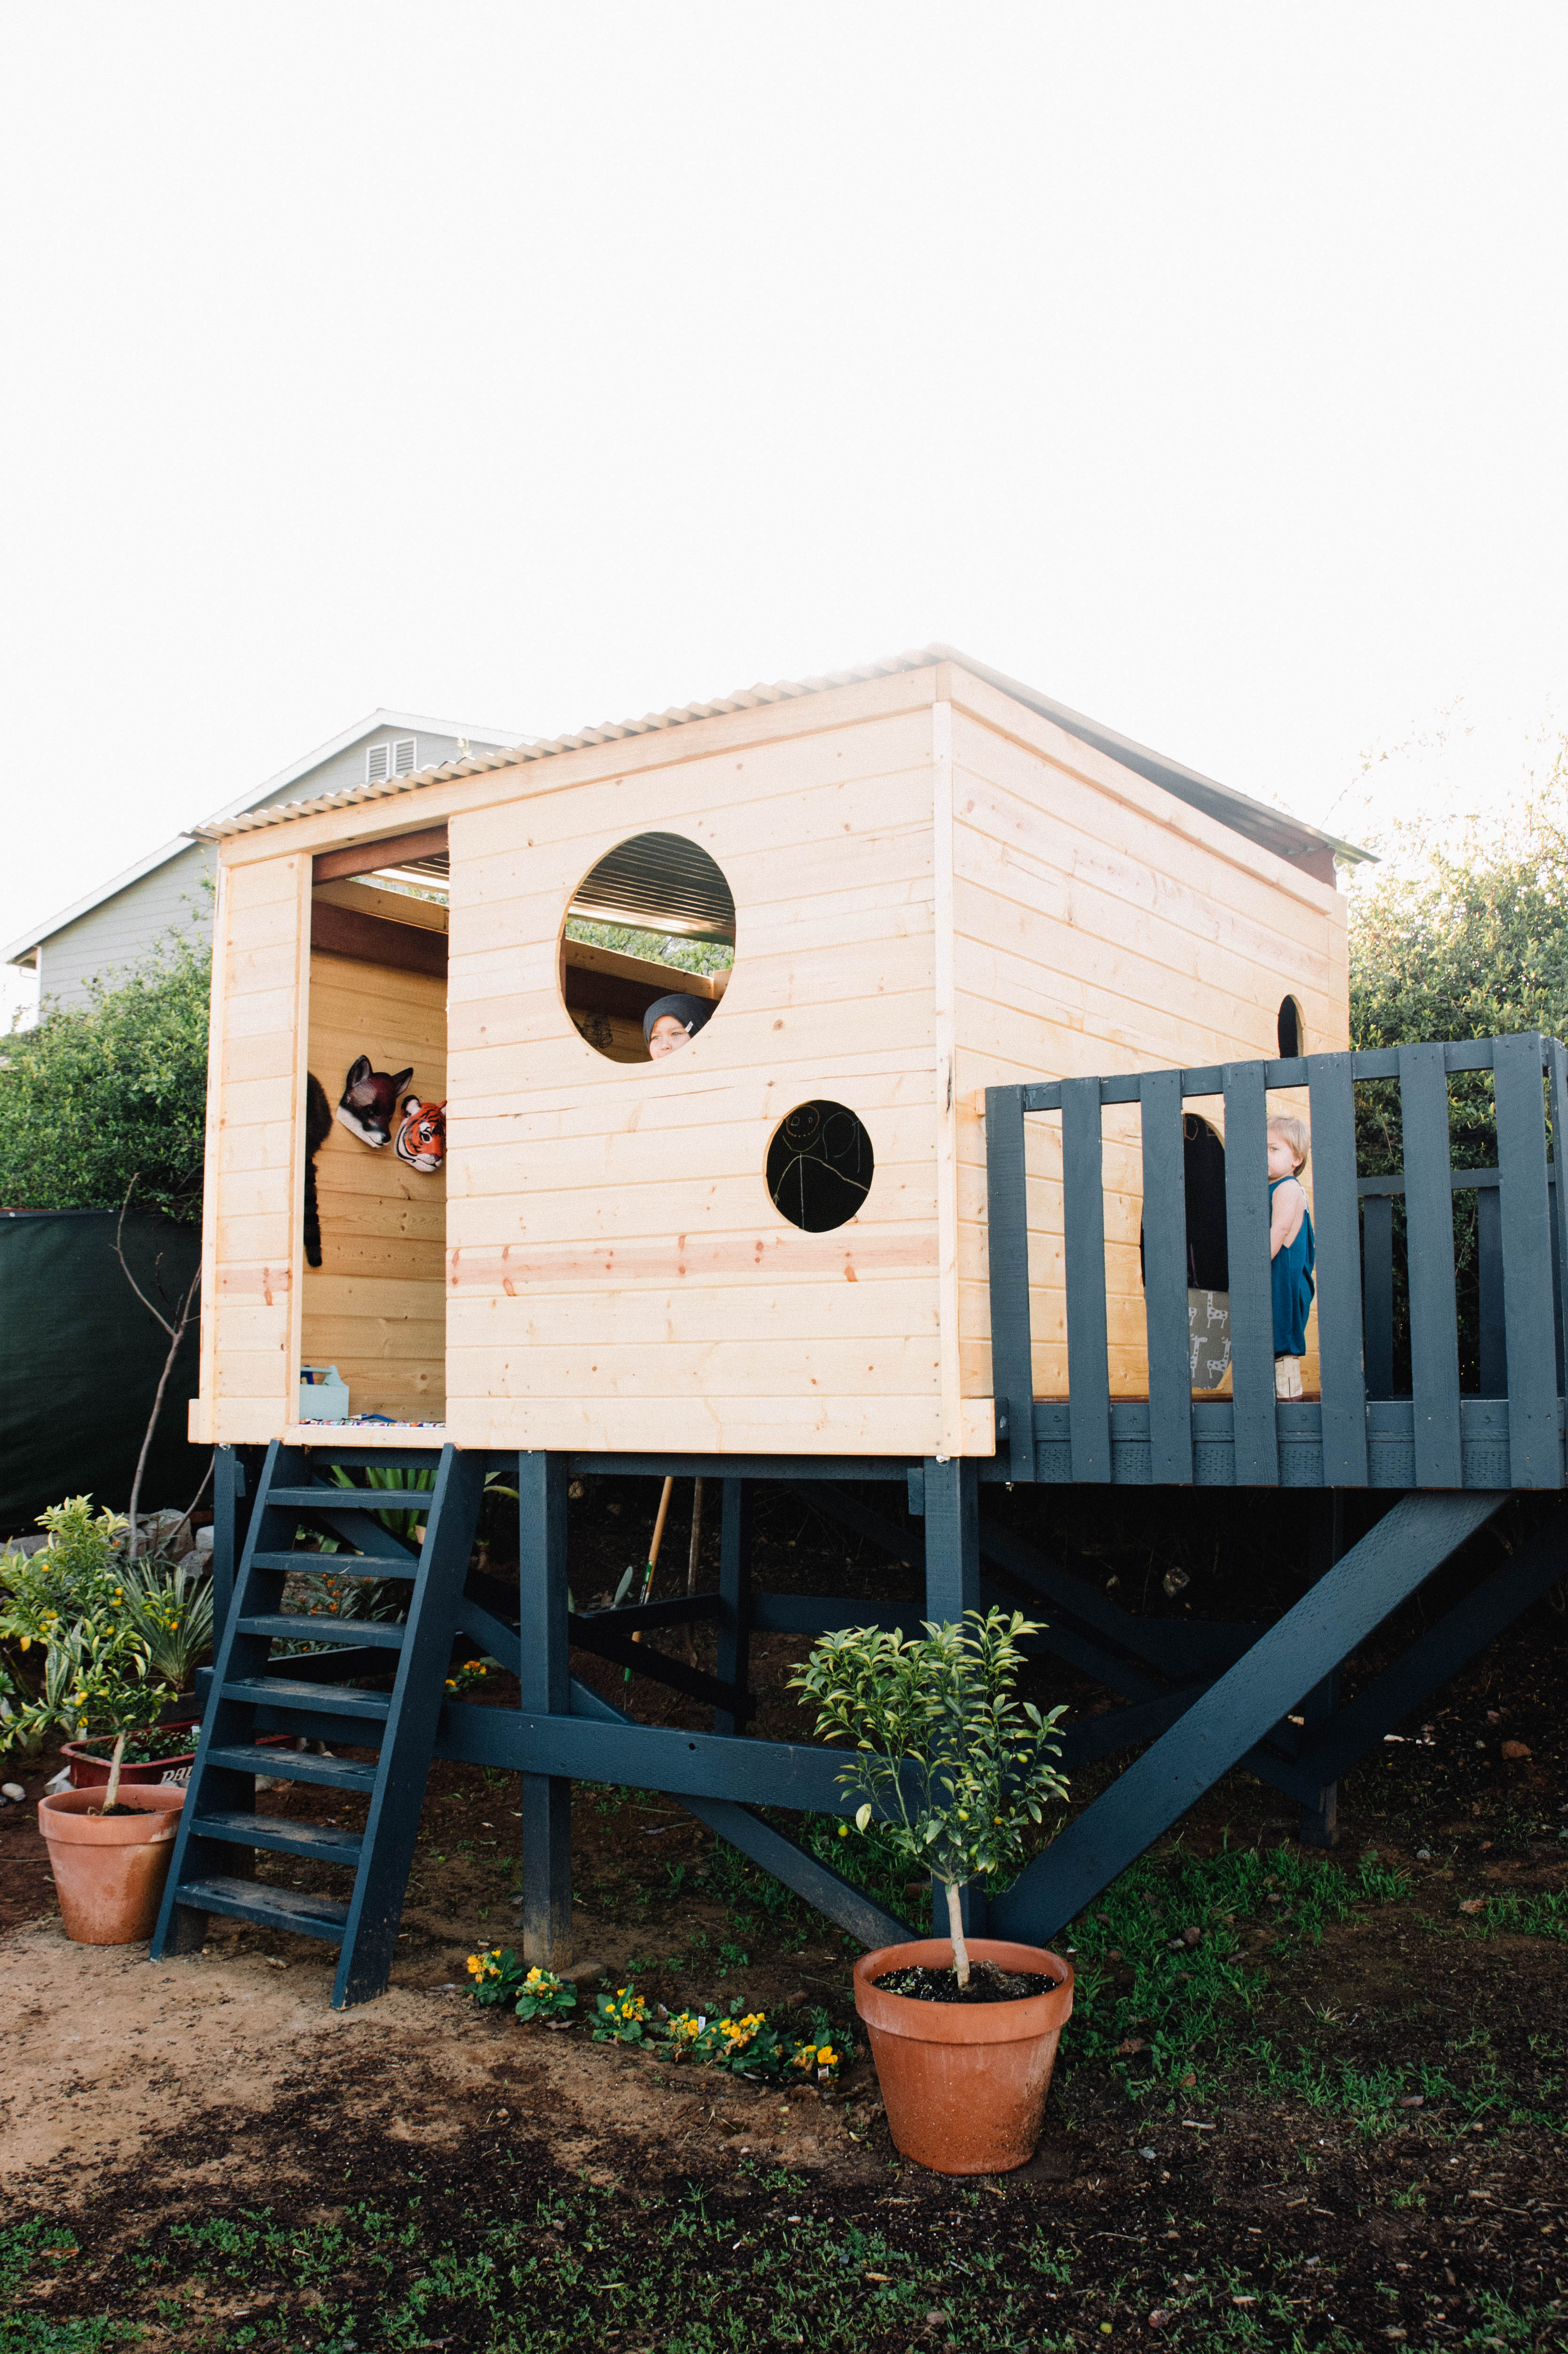 Bouw een blokhut/speelhuis op palen in de tuin!